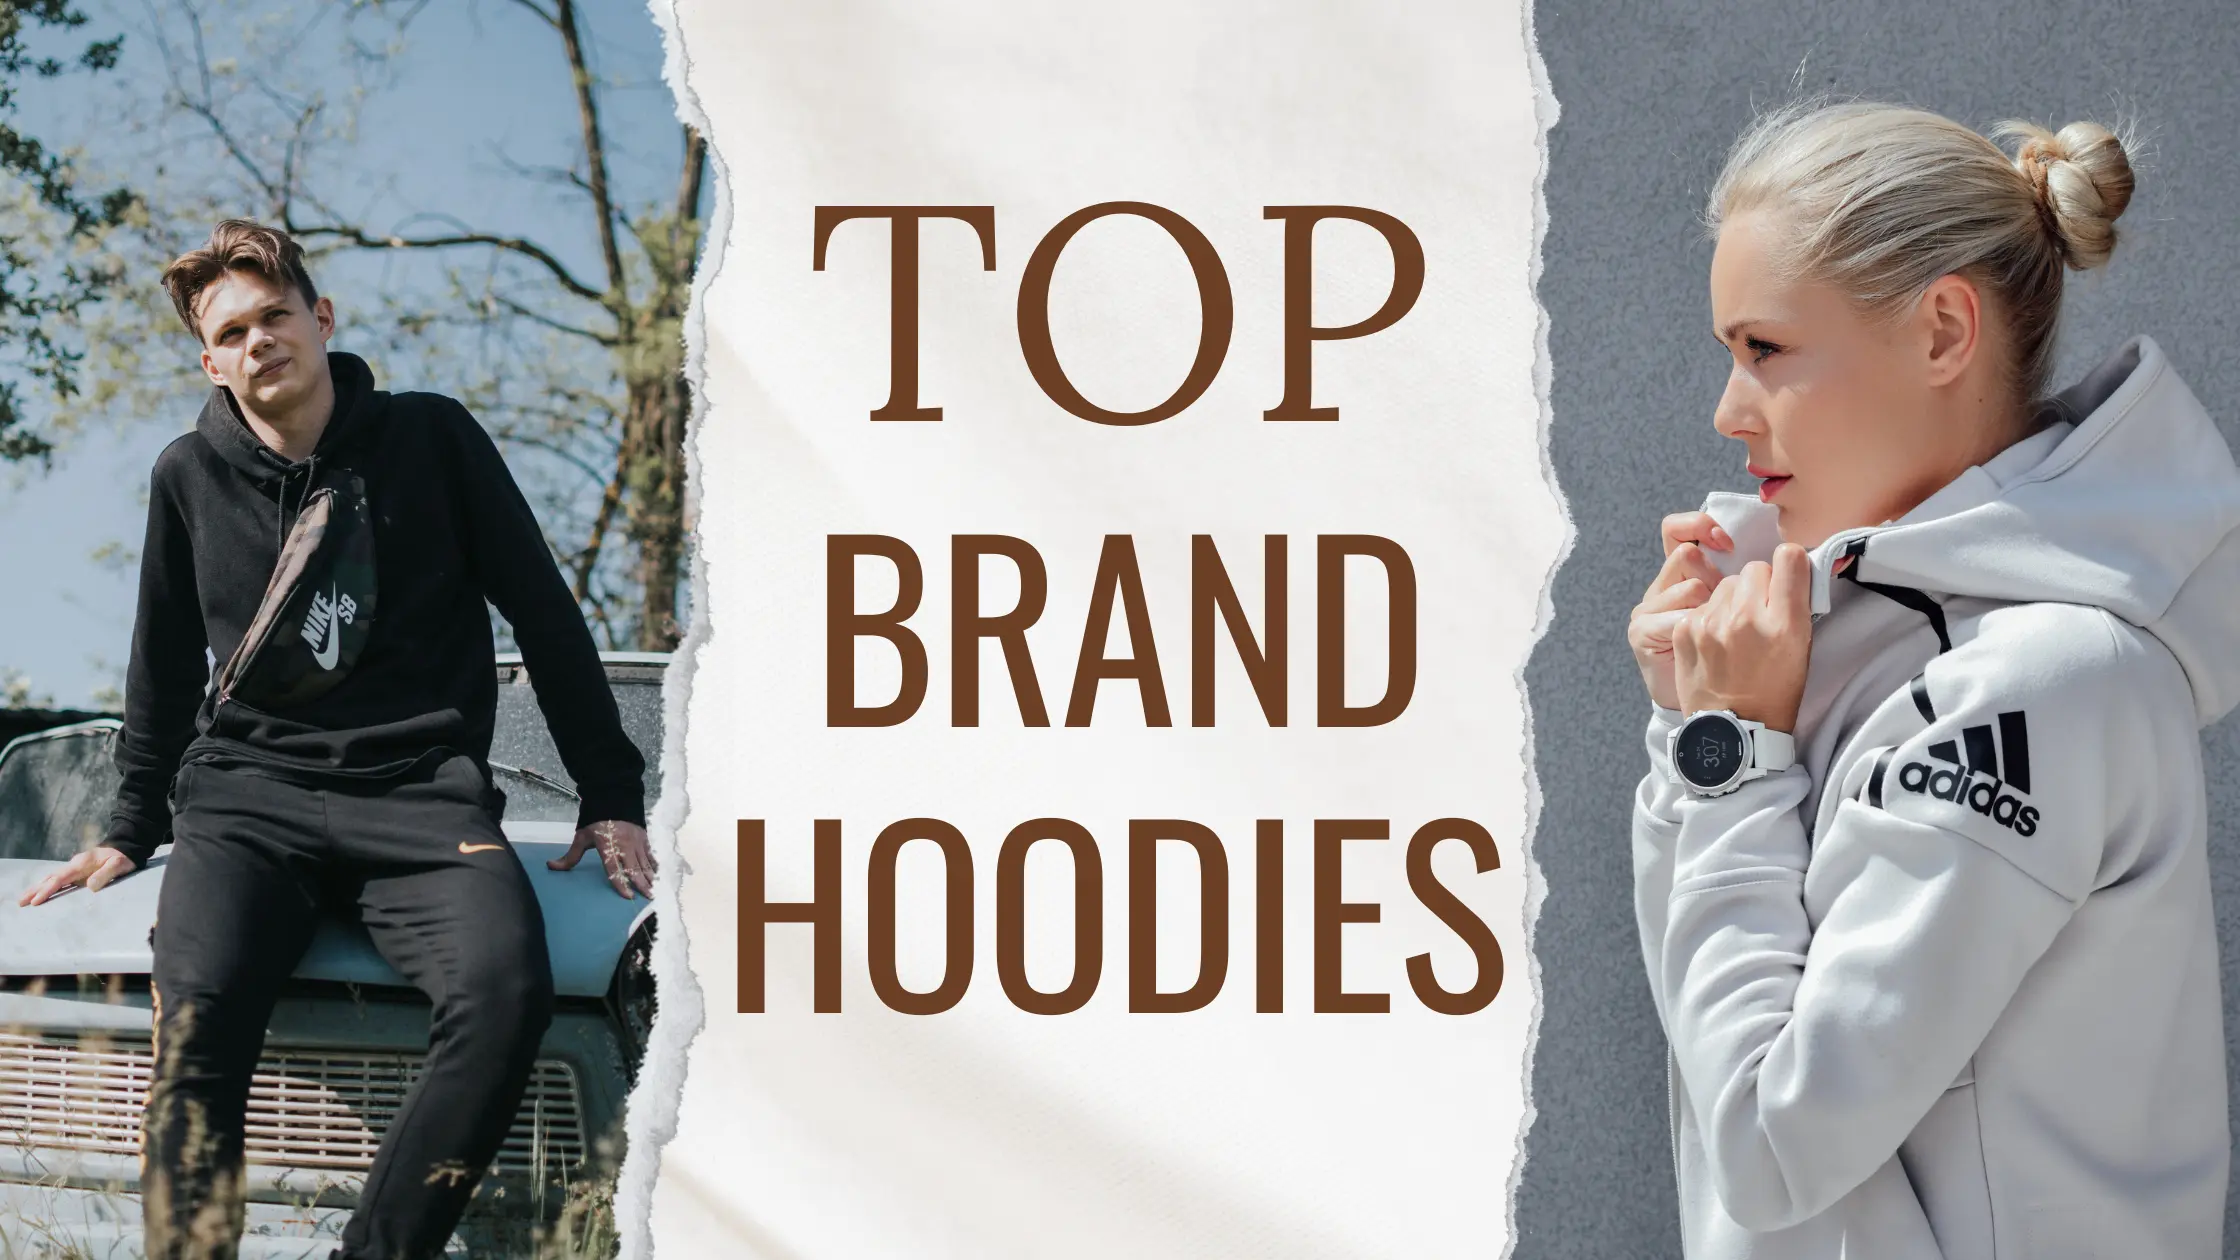 Top Hoodie brands